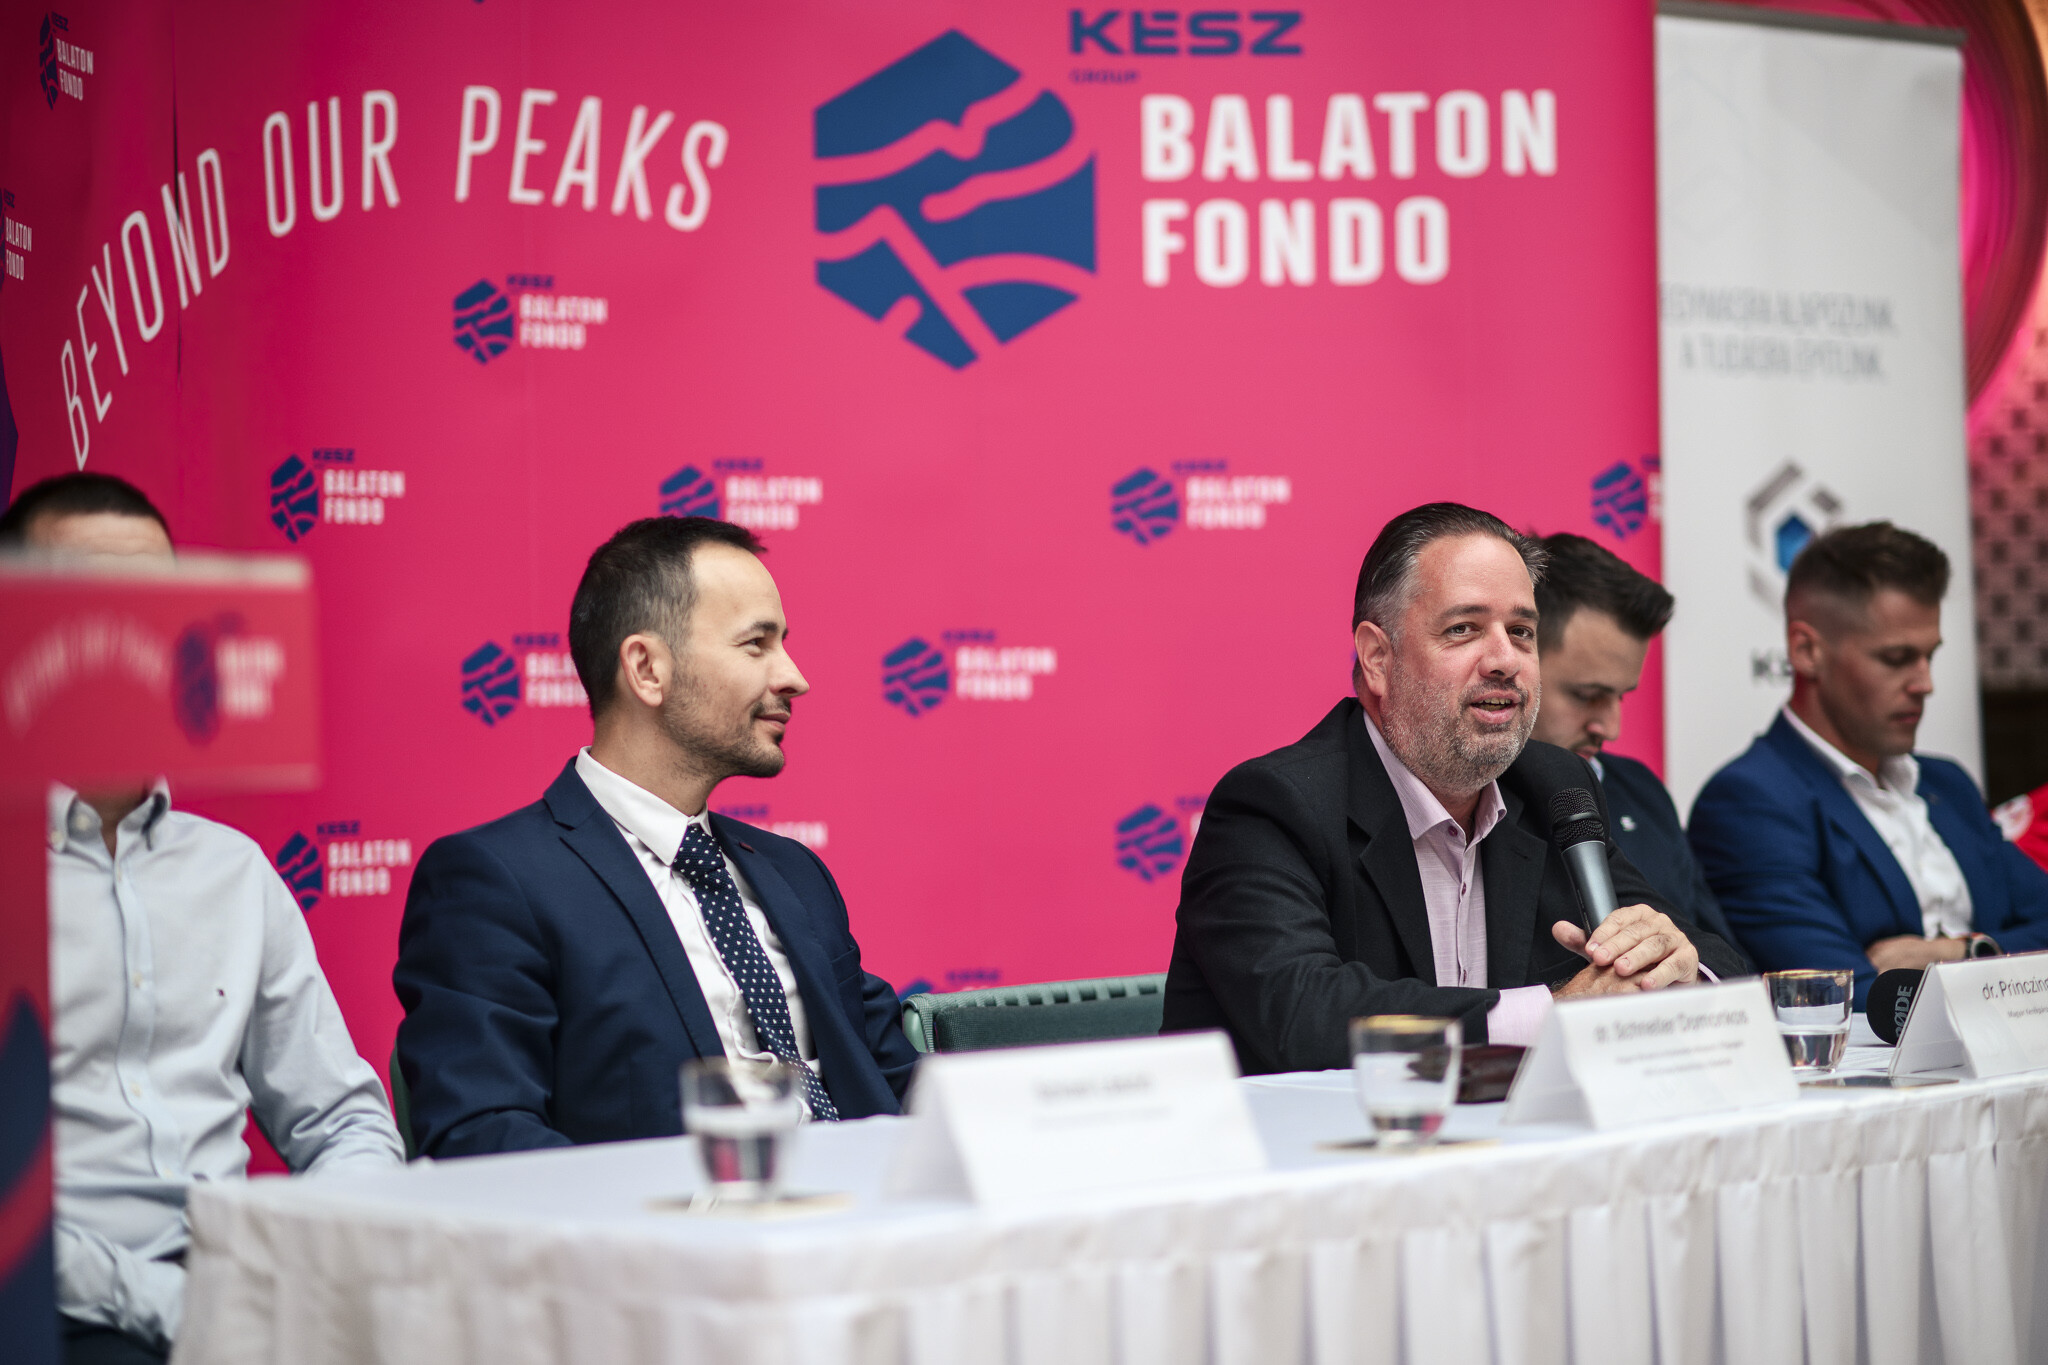 2024-ben újdonságokkal indul a KÉSZ Group Balatonfondo kerékpárverseny-2